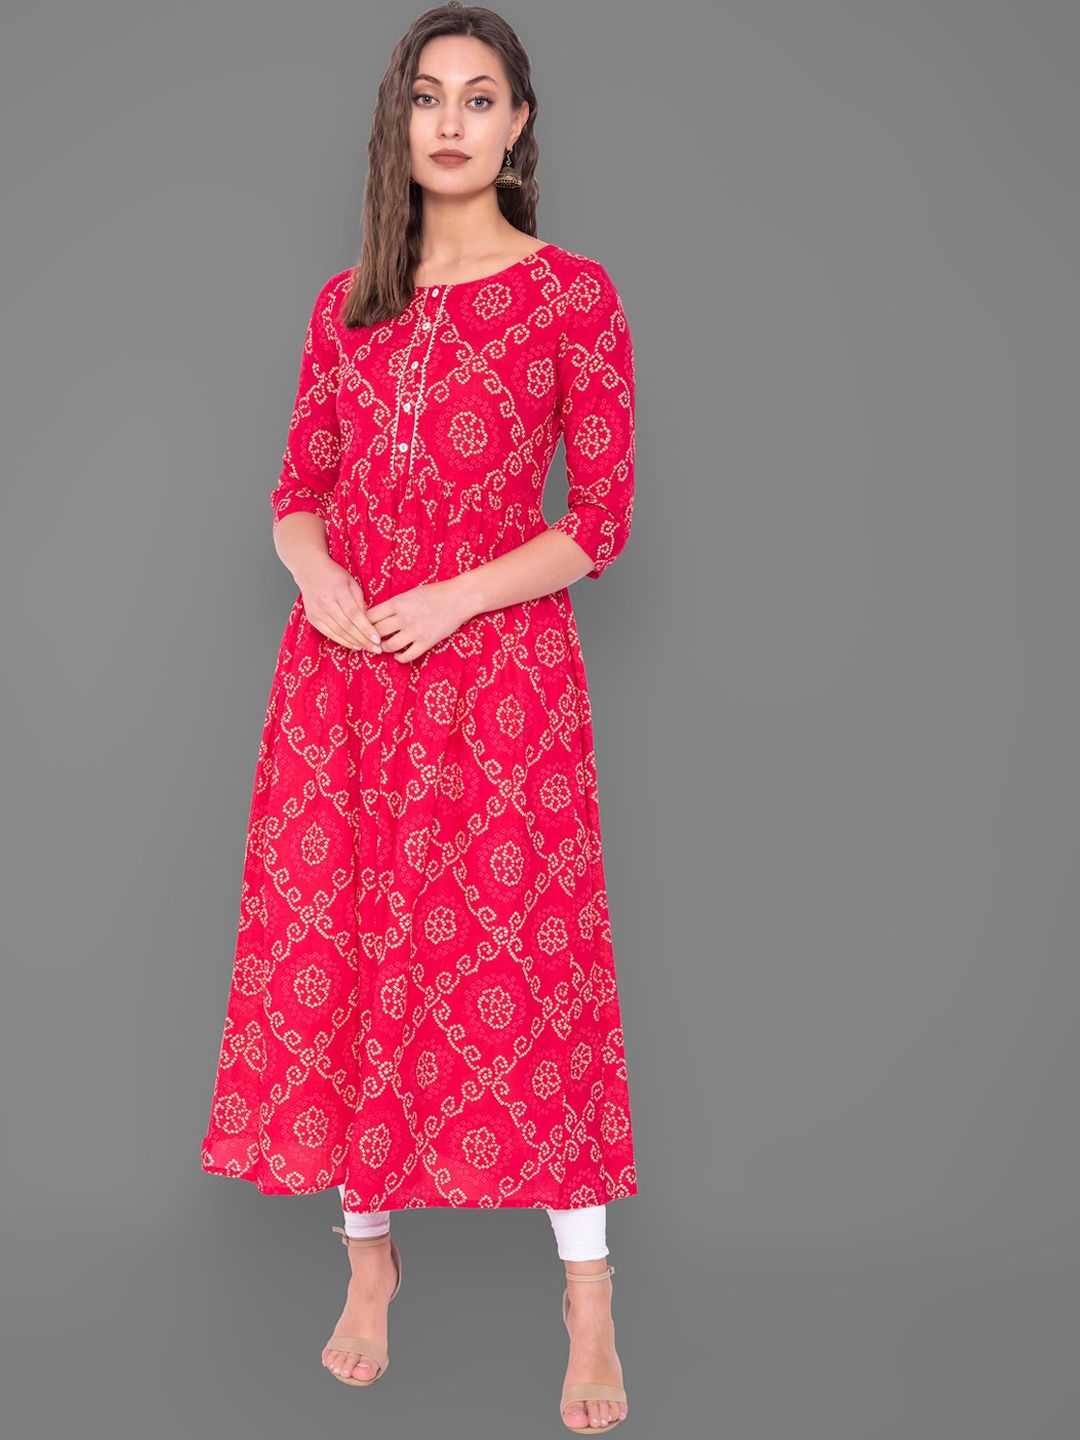 GULMOHAR JAIPUR Women Red Bandhani Dyed Thread Work Kurta Price in India